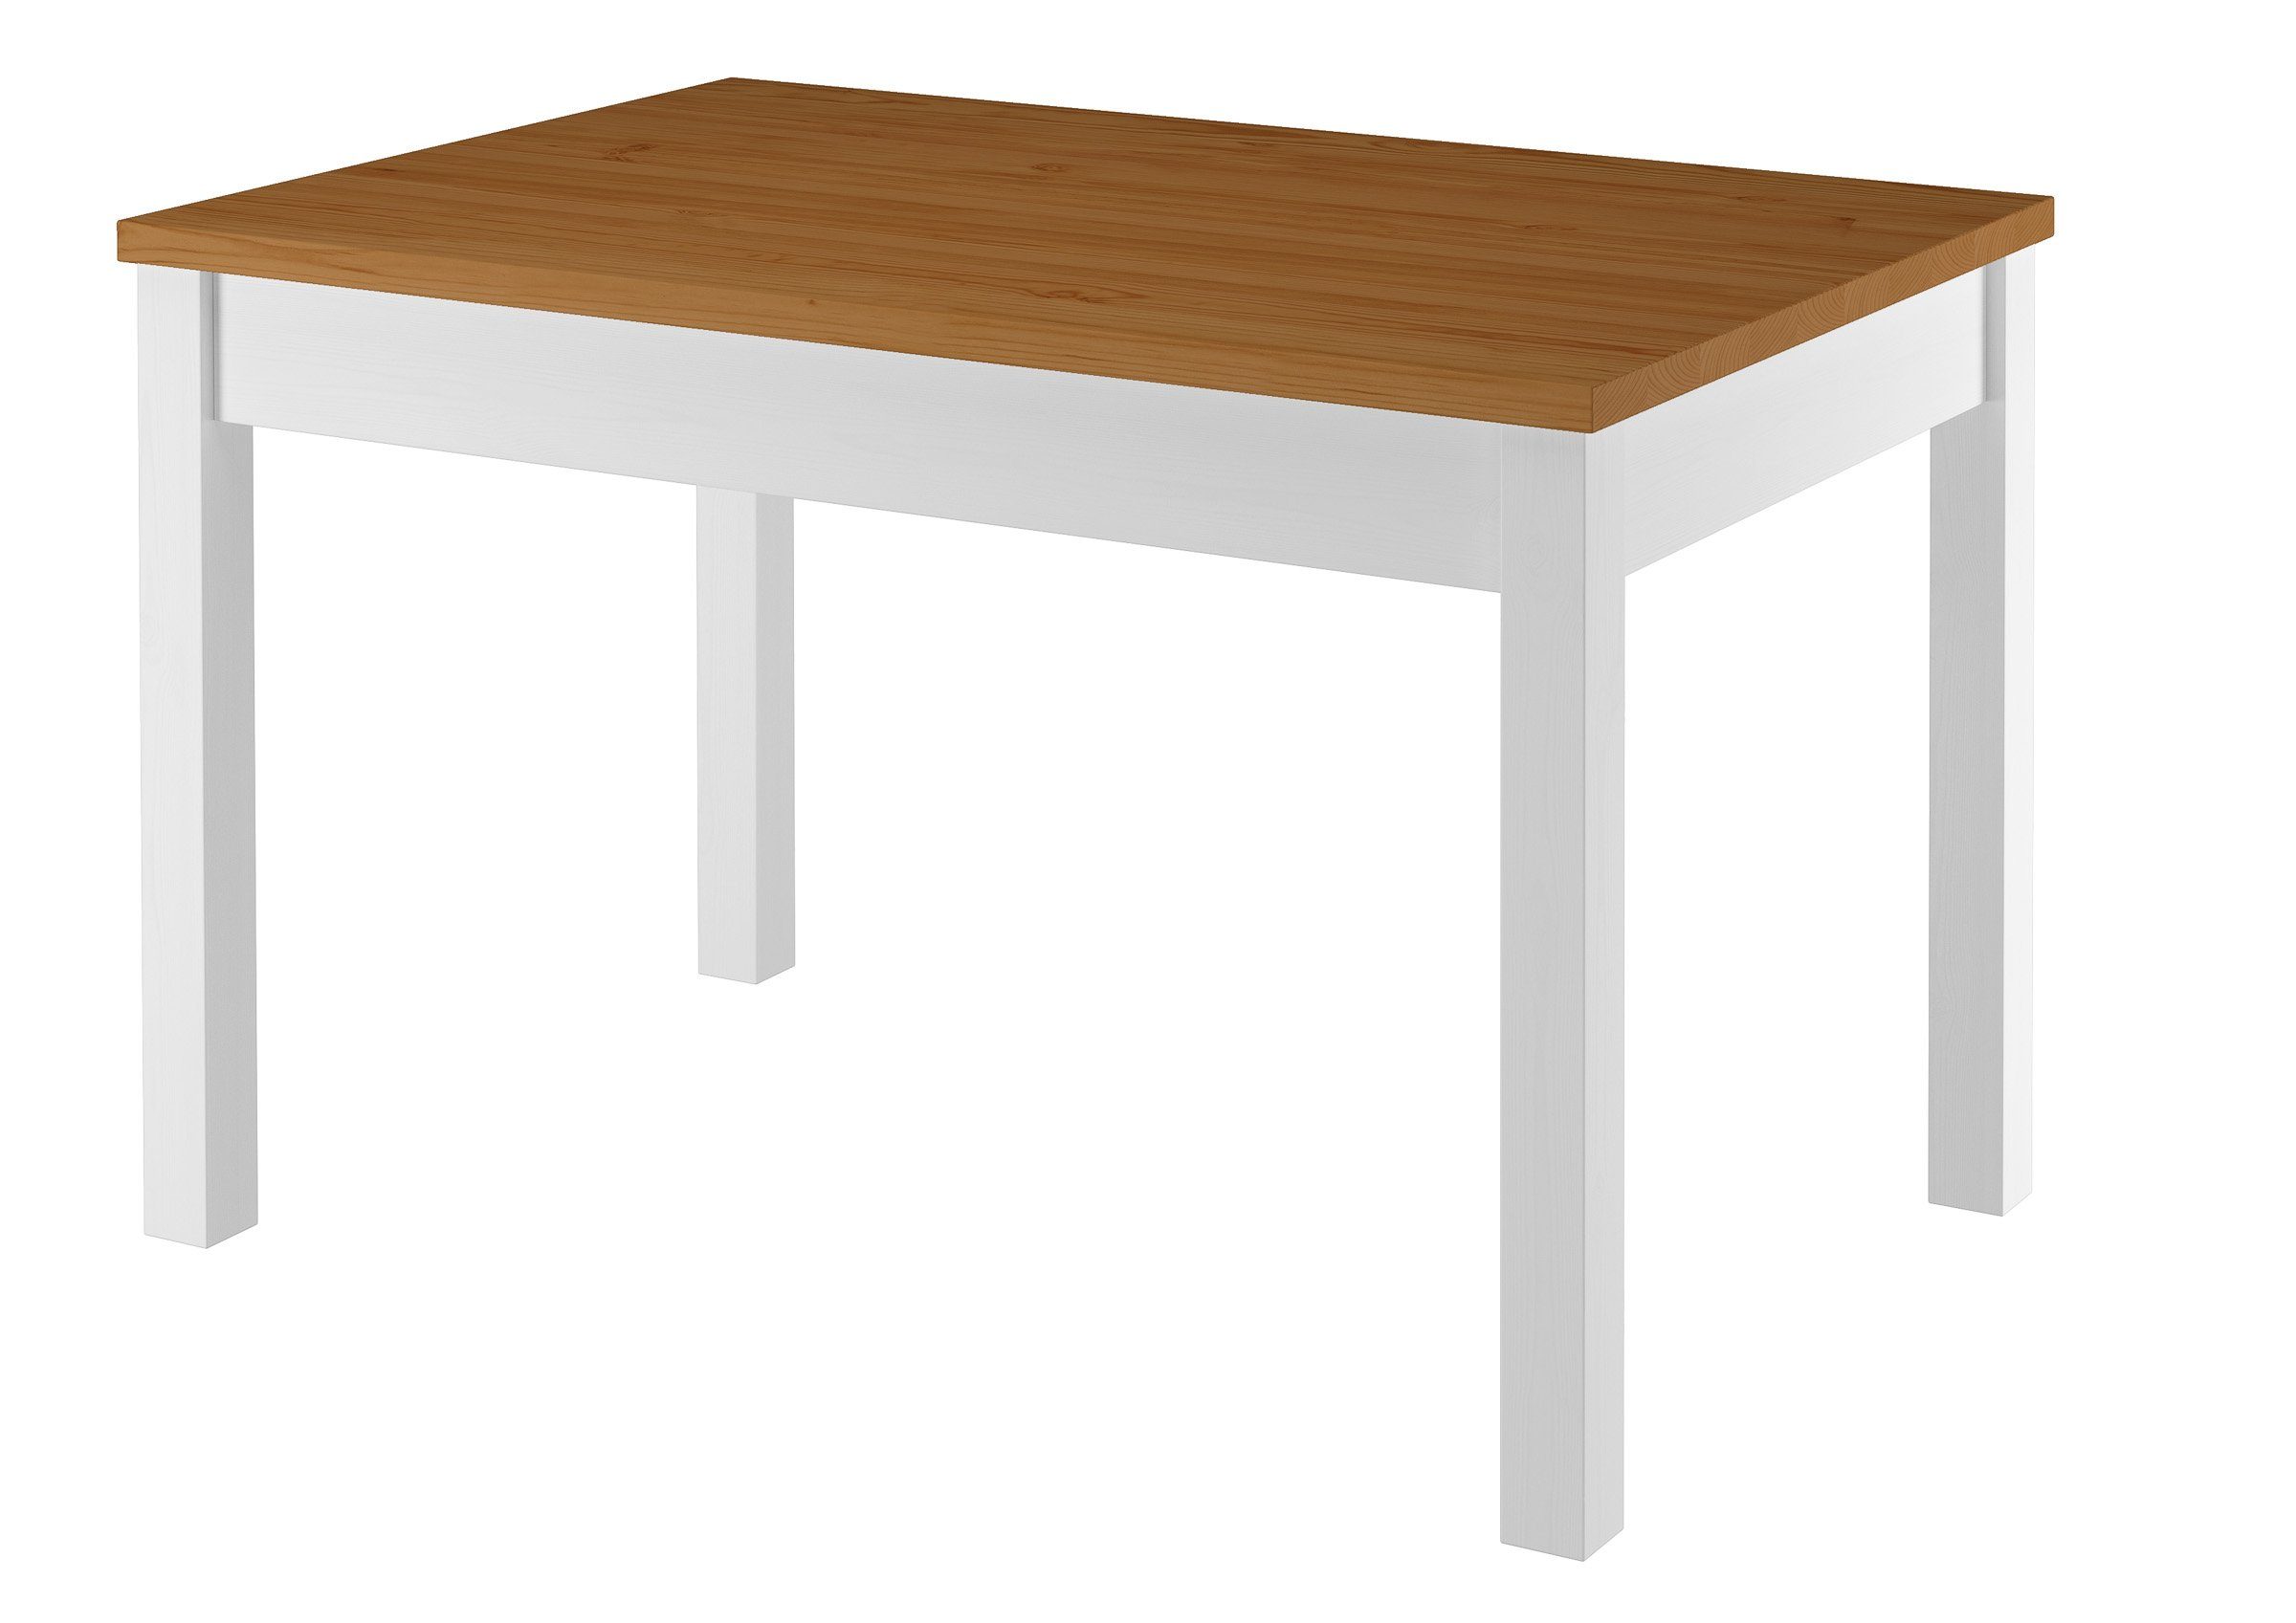 4 Kiefer Tisch Essgruppe Eicheton waschweiß und weiß ERST-HOLZ Stühlen